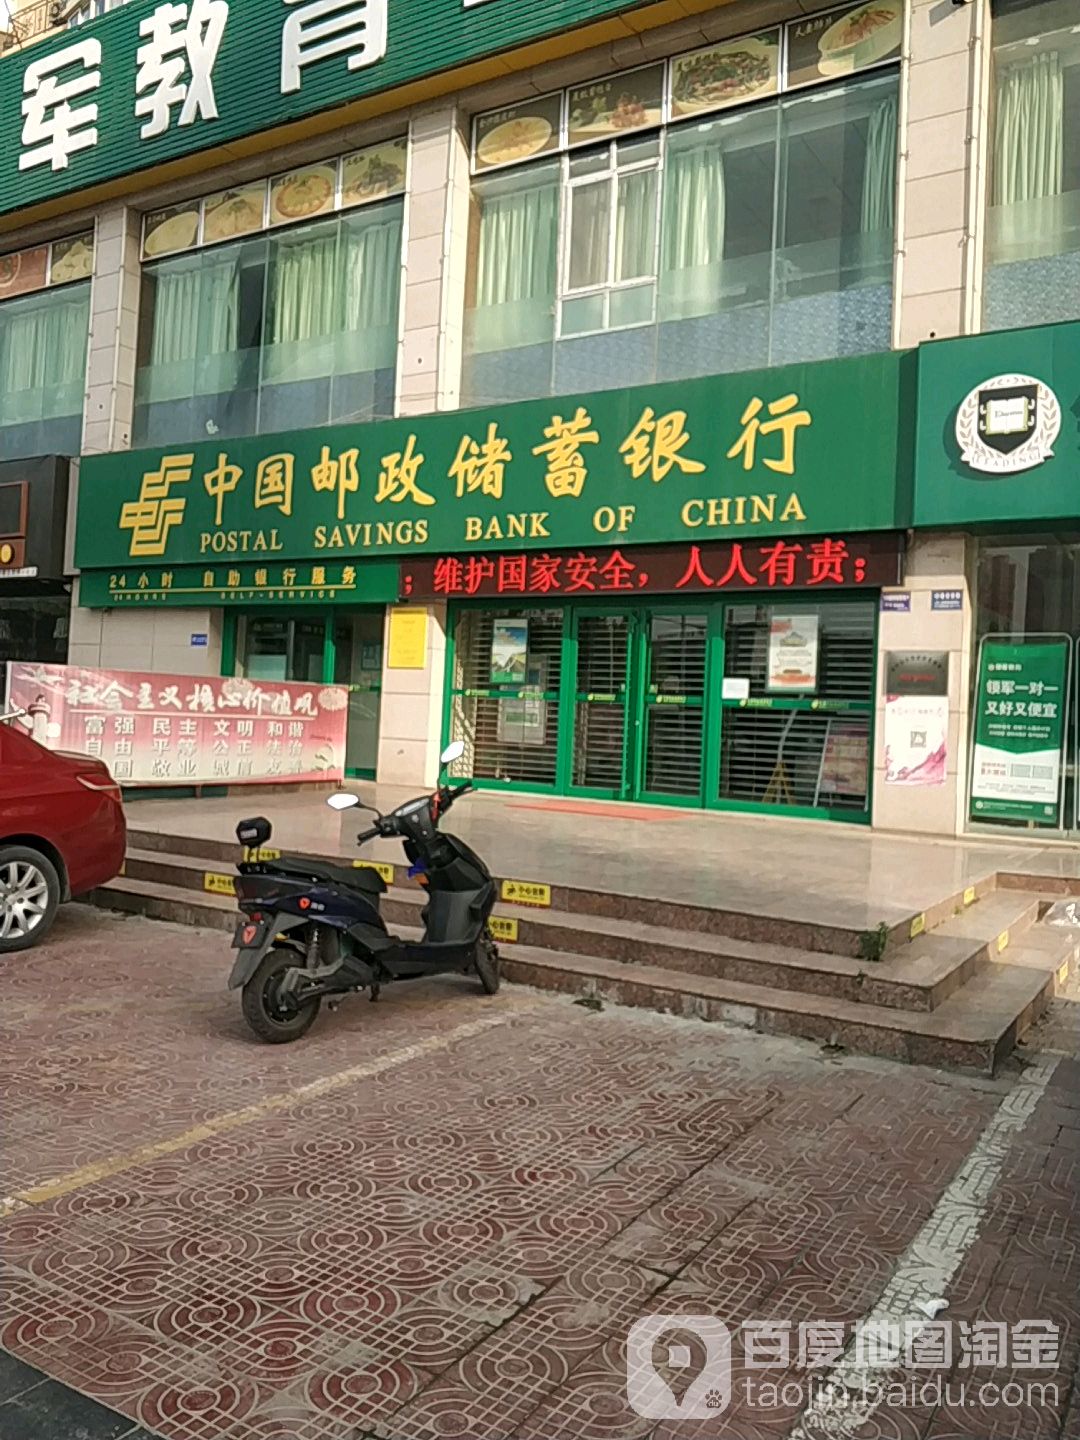 中國郵政儲蓄銀行24小時自助銀行(中華路店)